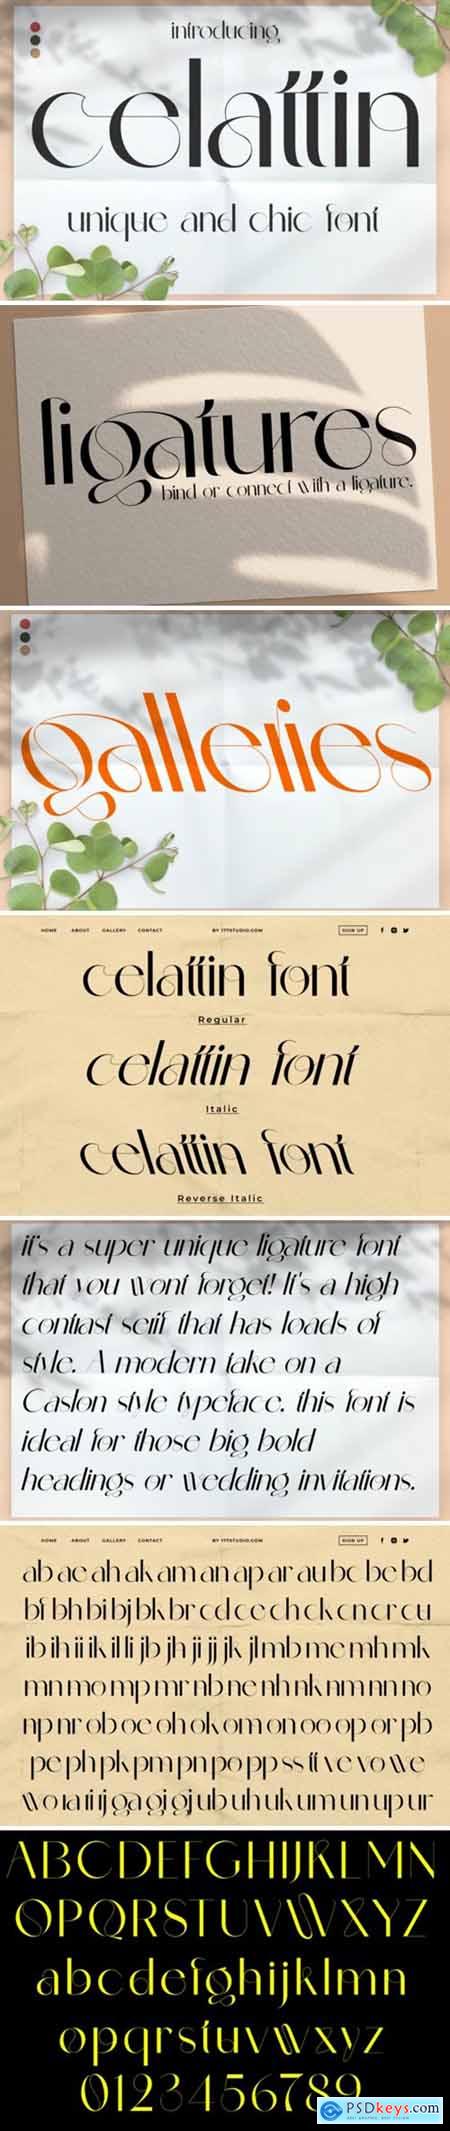 Celattin Font